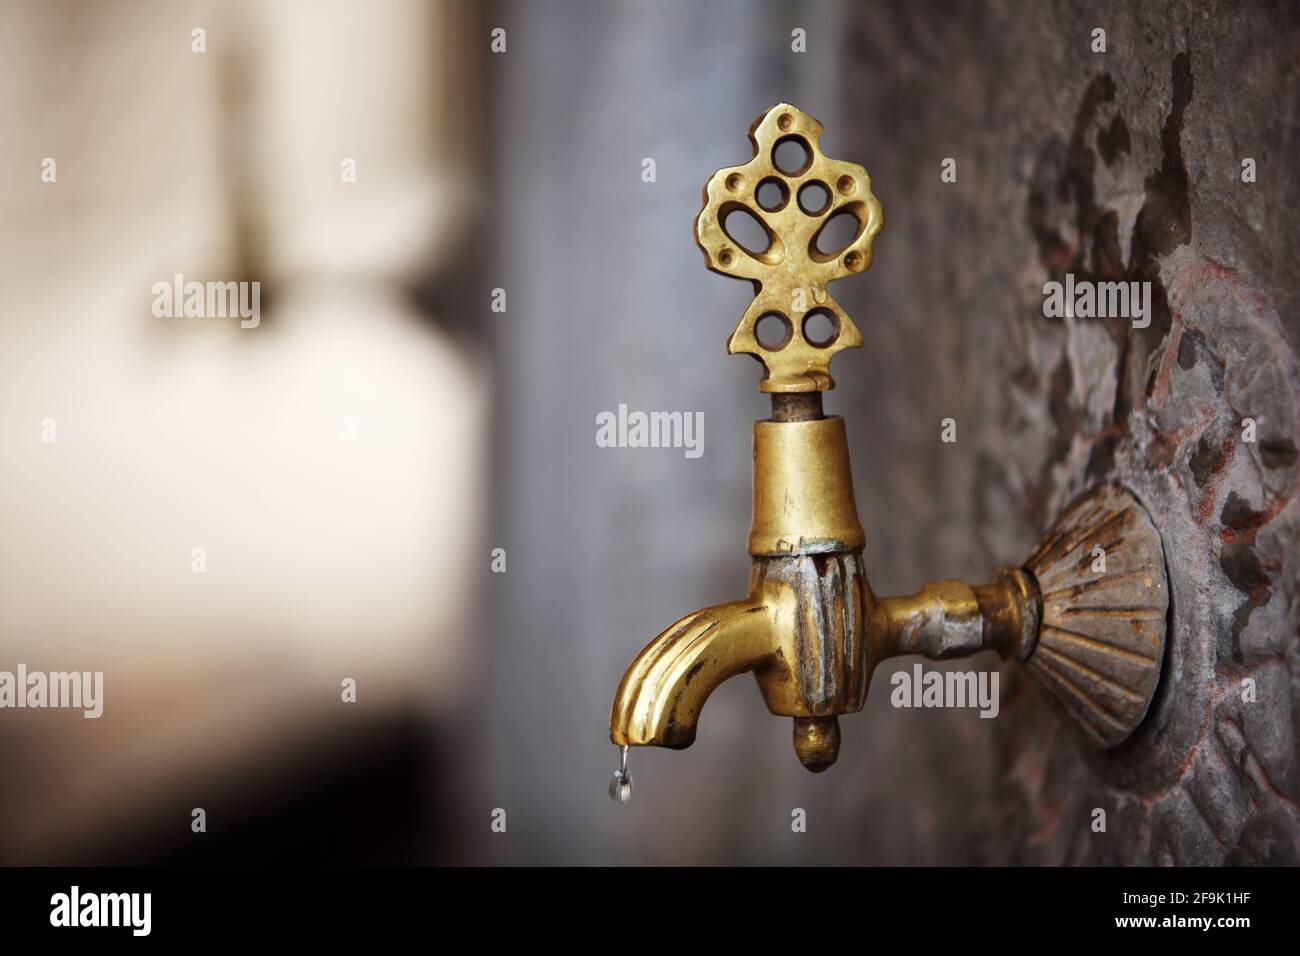 Antico rubinetto in ottone nello spazio di Wudu (Ablution) nel cortile del santuario di Mevlana Jalal ad-DIN Mu?ammad Rumi – Konya. Foto Stock